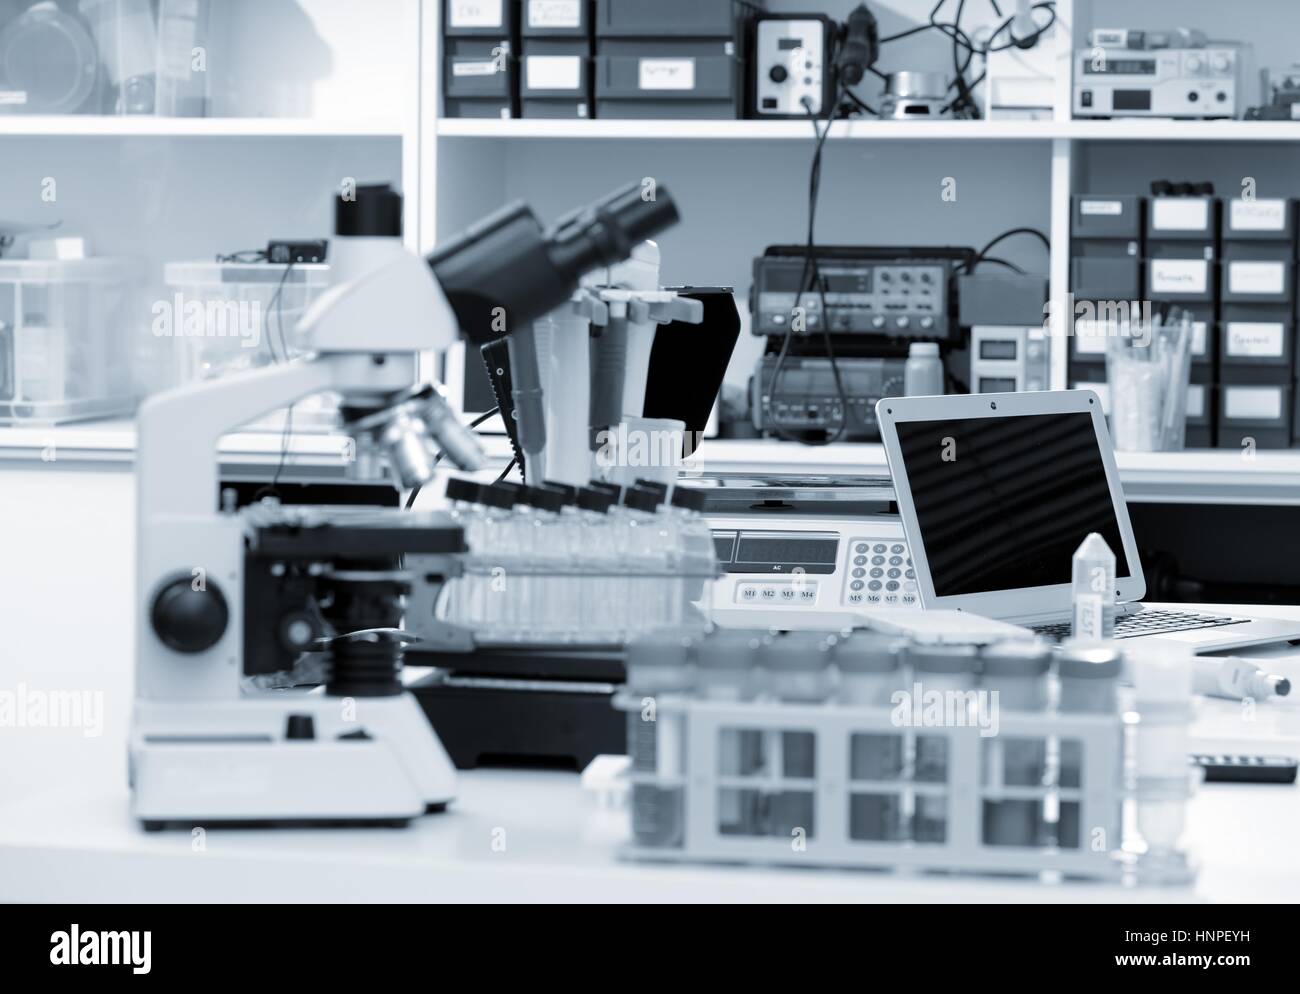 Laboratoire de sciences avec un microscope, des échantillons de matériel biologique et d'un ordinateur sur un bureau. Focus sélectif avec bokeh. Rack avec des échantillons et des produits chimiques Banque D'Images